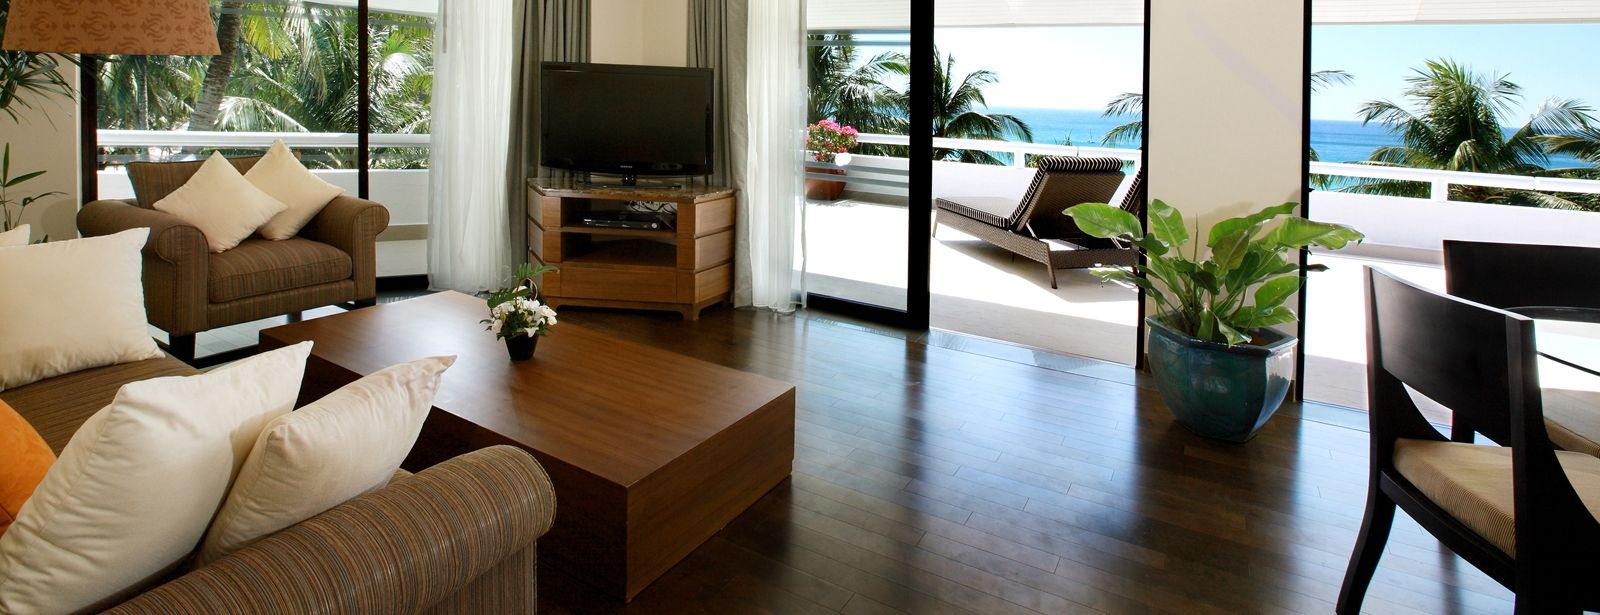 ocean front 1 bedroom deluxe suites 